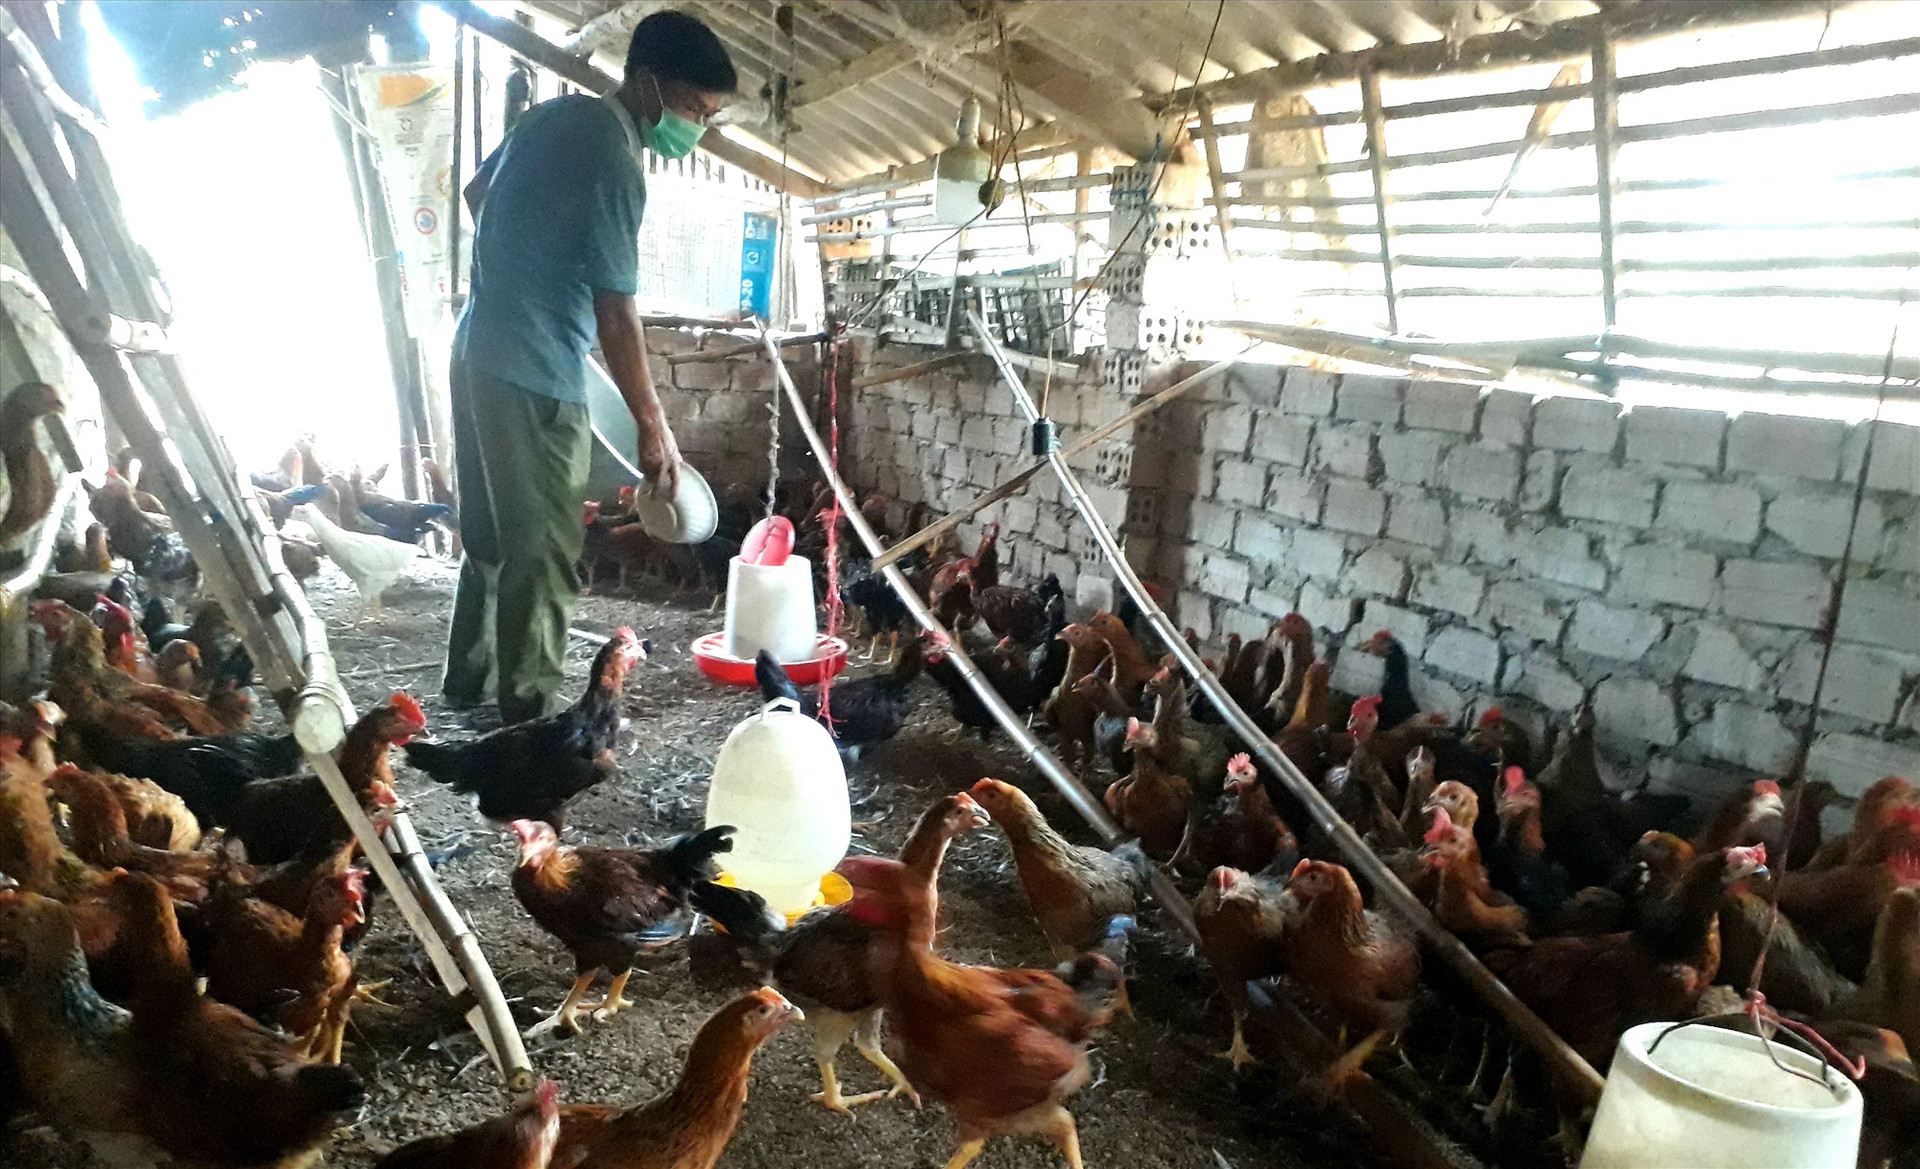 Mô hình nuôi gà trên nền đệm lót sinh học của ông Lê Văn Minh ở thôn Lộc Thượng (Quế Long, Quế Sơn) mang lại hiệu quả kinh tế cao. Ảnh: T.P